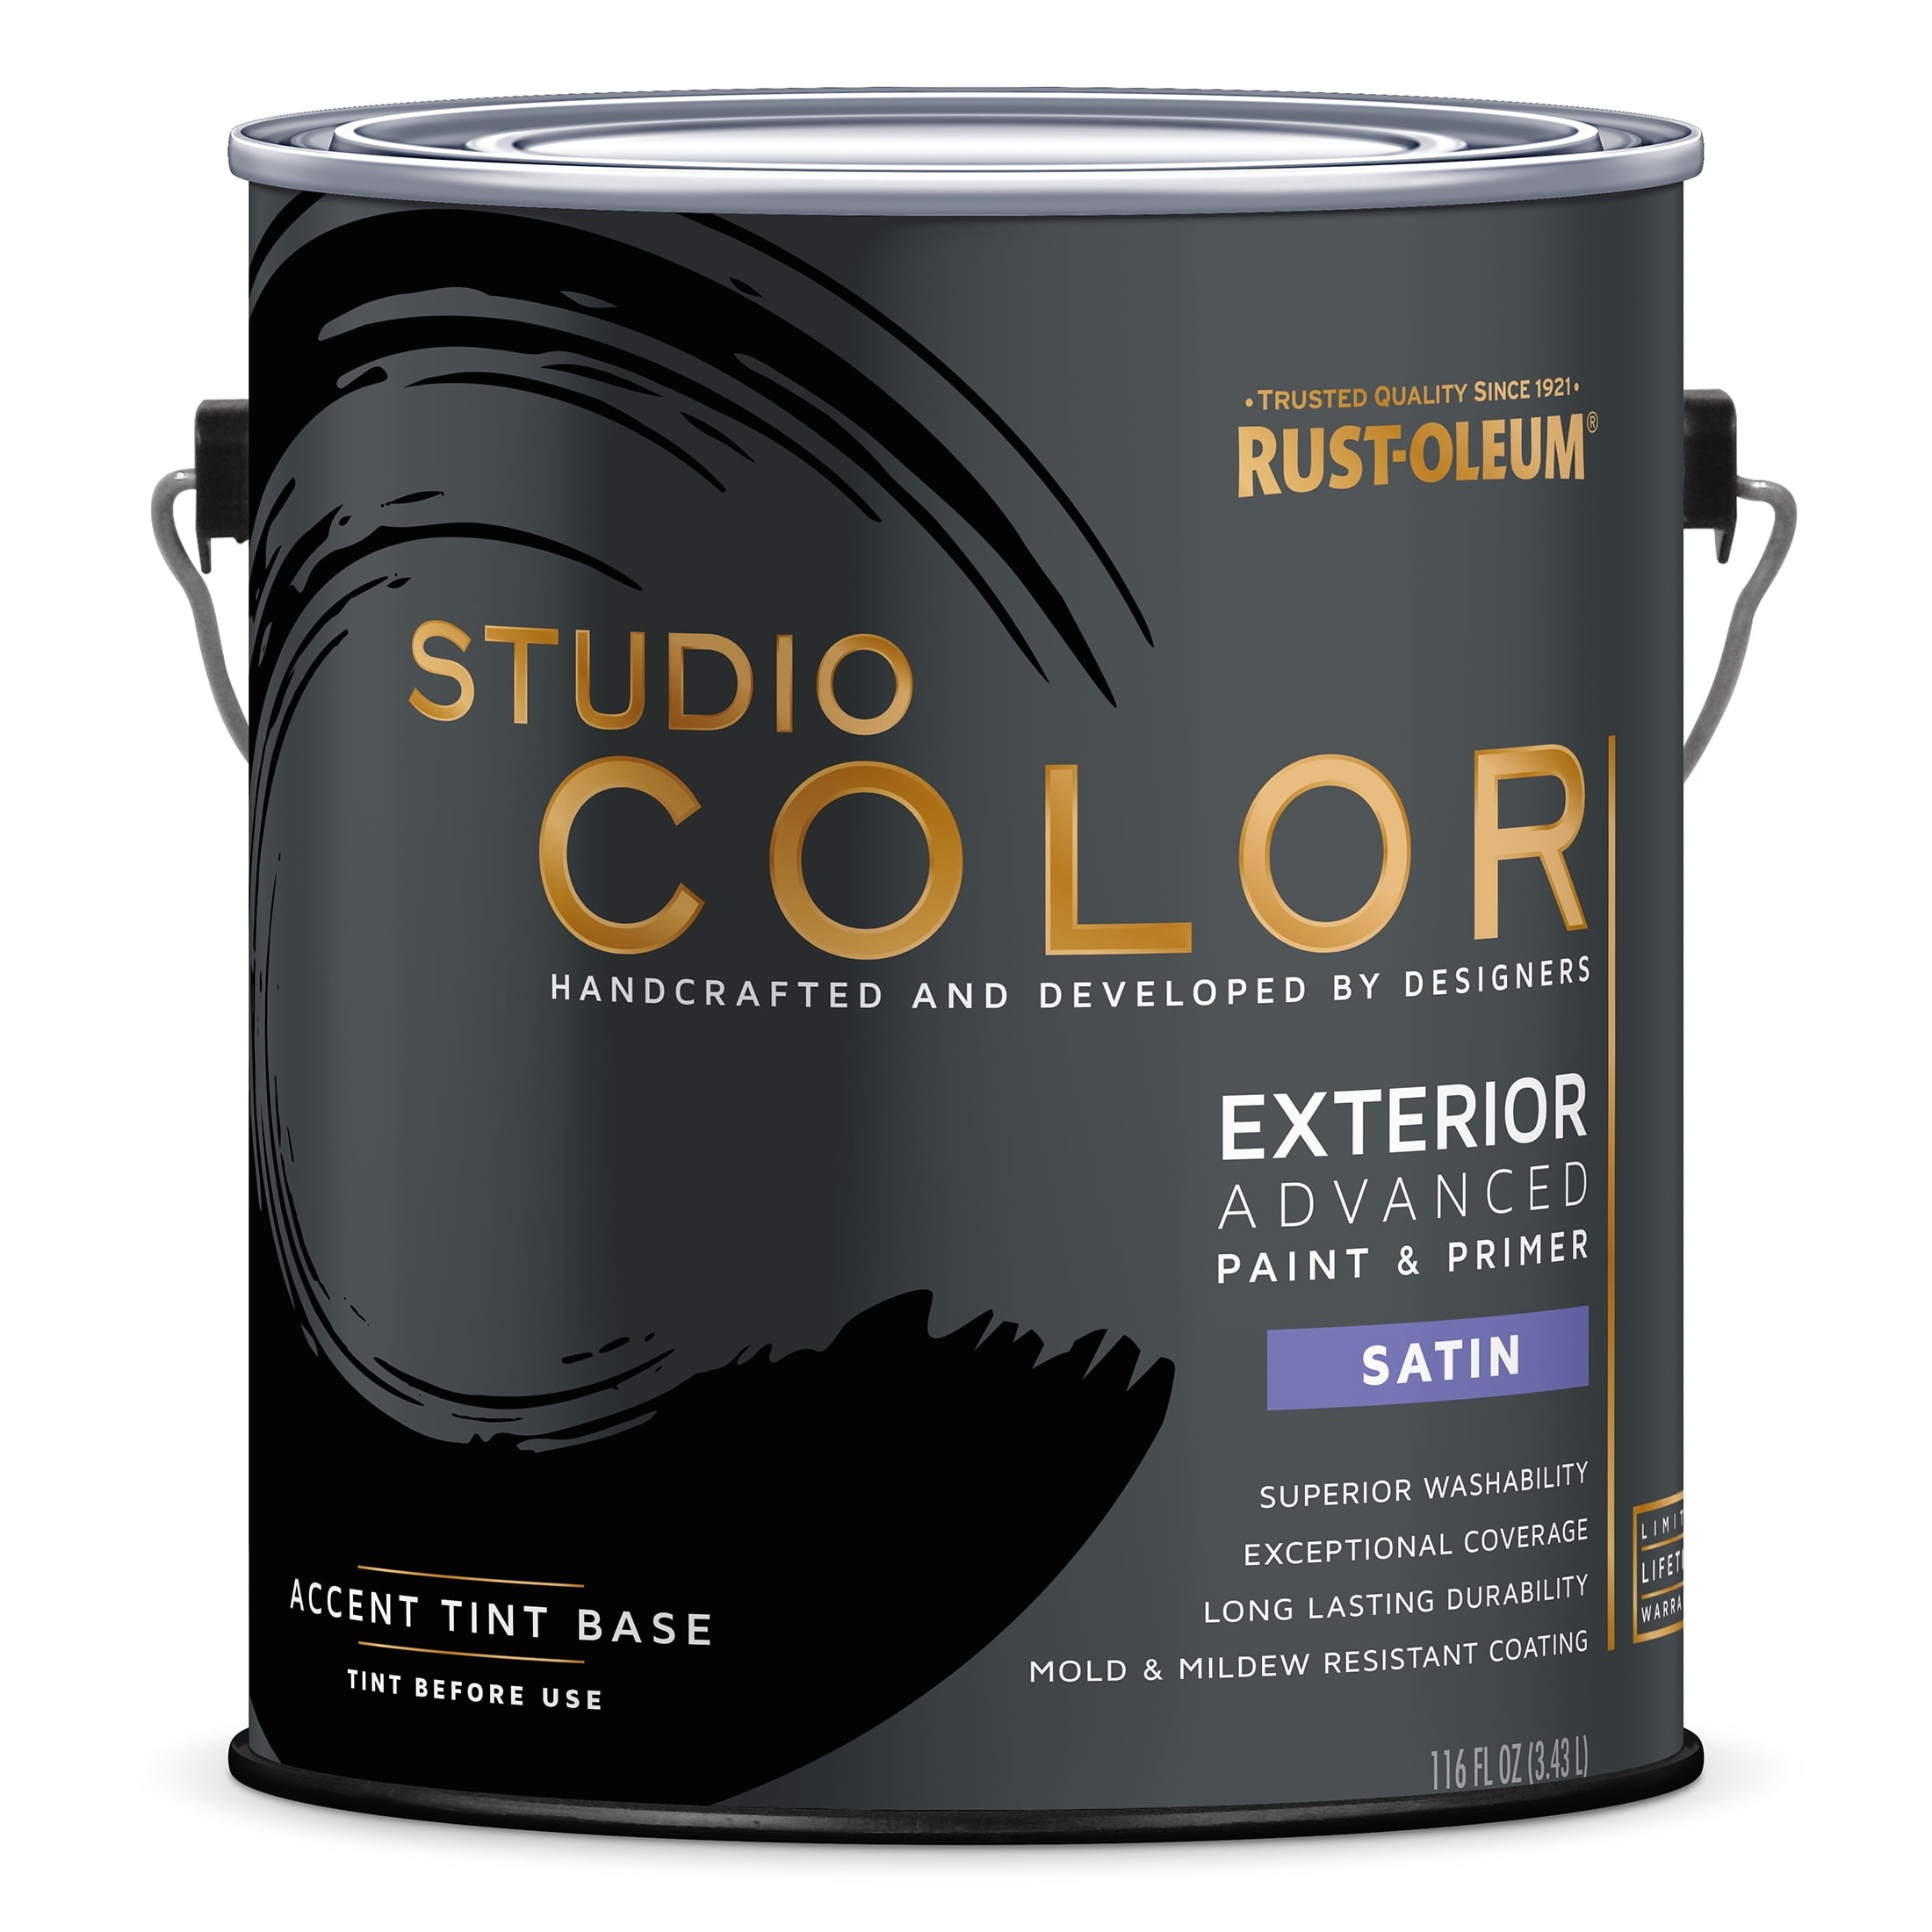 Accent Base, Rust-Oleum Studio Color Advanced Paint + Primer Exterior Satin, Gallon